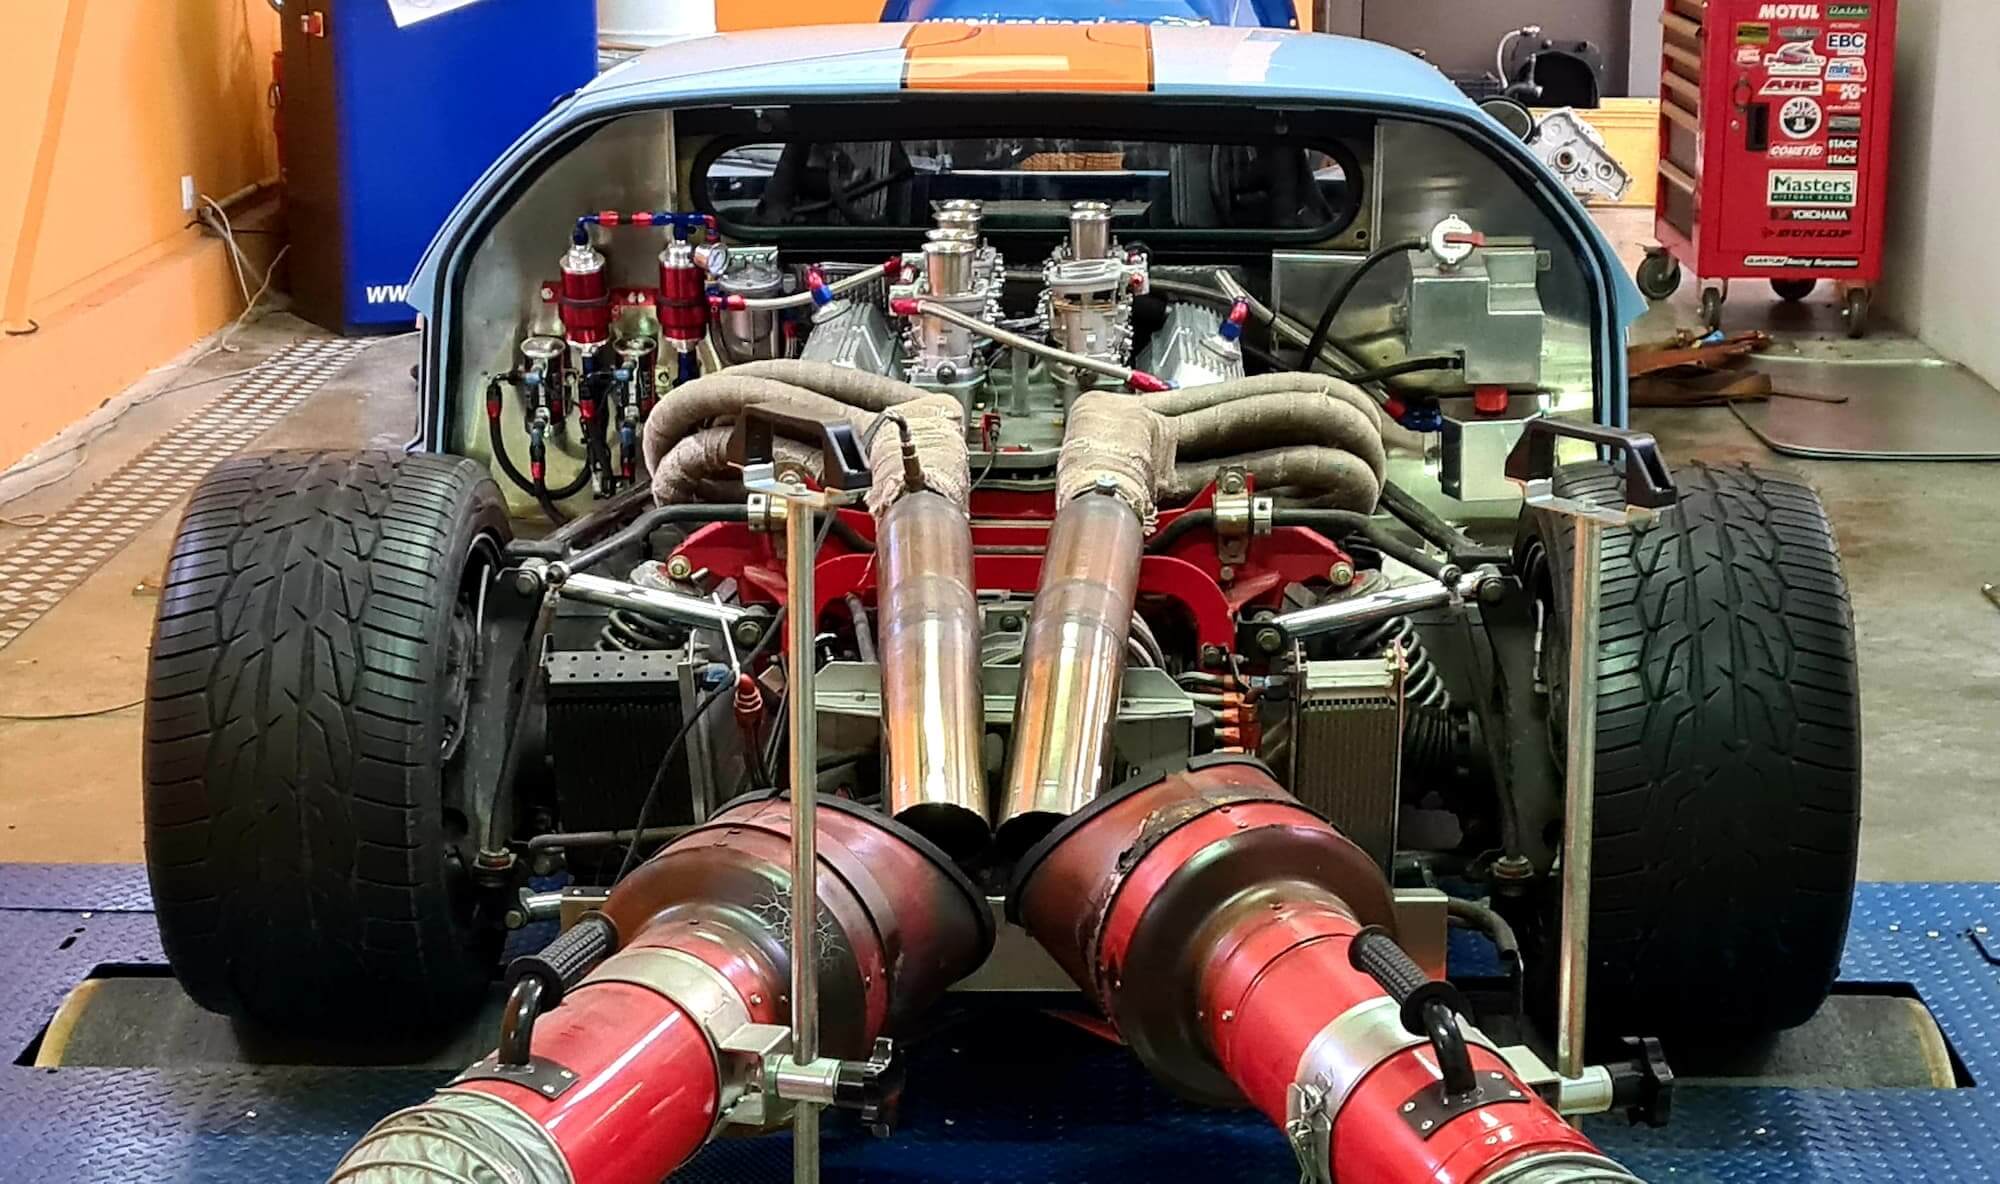 Garage des Damiers - Banc de puissance - Rotronics - Réglage moteur - Historic racing - Vintage racing - Classic cars - Ford GT40 - Le Mans